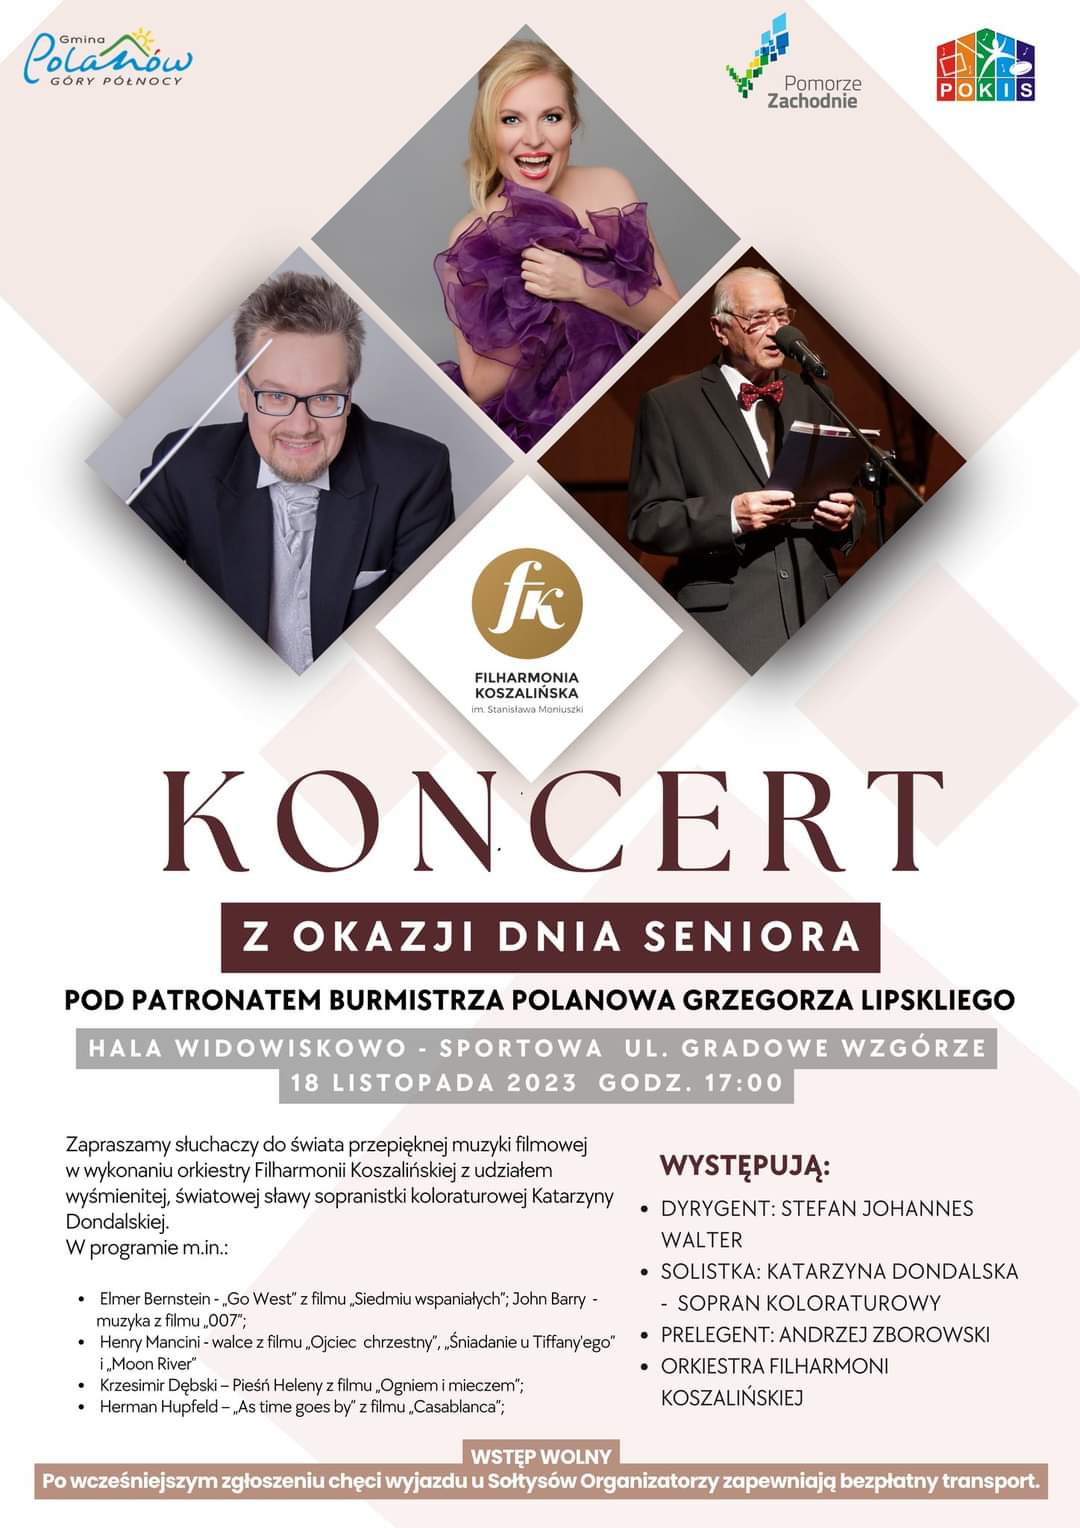 Plakat z zaproszeniem na koncert z okazji dnia seniora w Polanowie 18 listopada 2023